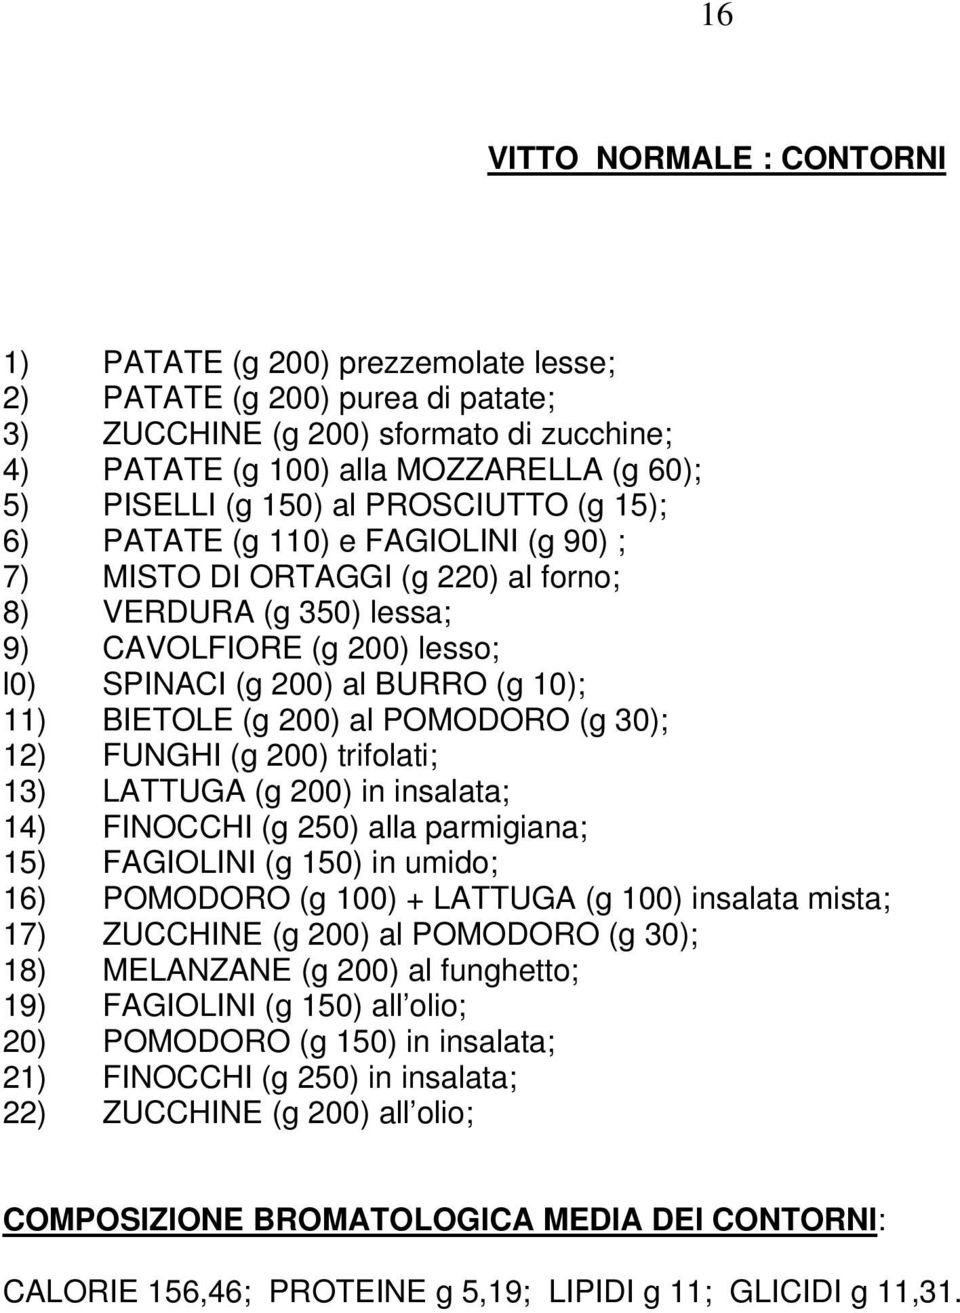 BIETOLE (g 200) al POMODORO (g 30); 12) FUNGHI (g 200) trifolati; 13) LATTUGA (g 200) in insalata; 14) FINOCCHI (g 250) alla parmigiana; 15) FAGIOLINI (g 150) in umido; 16) POMODORO (g 100) + LATTUGA